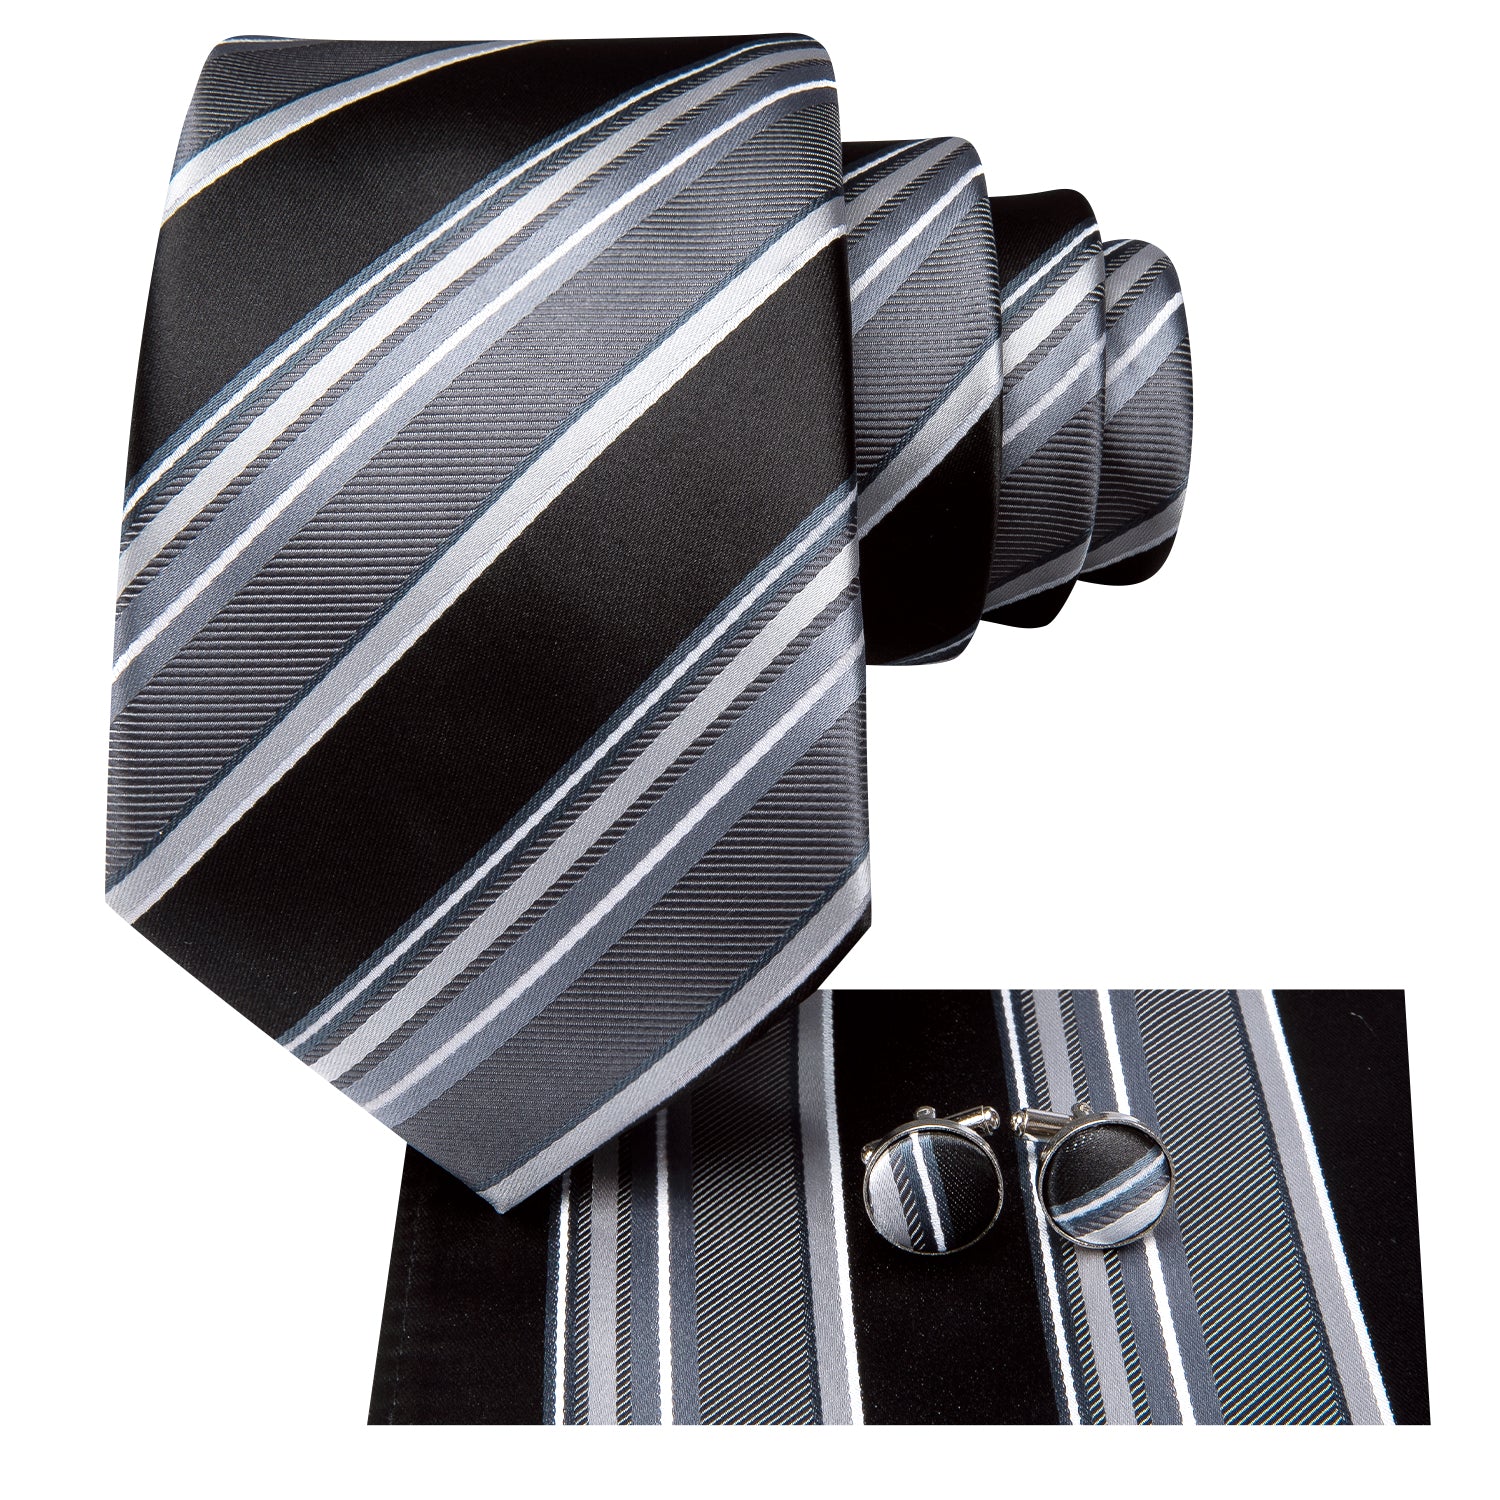 Hi-Tie Black White Striped Men's Tie Pocket Square Cufflinks Set